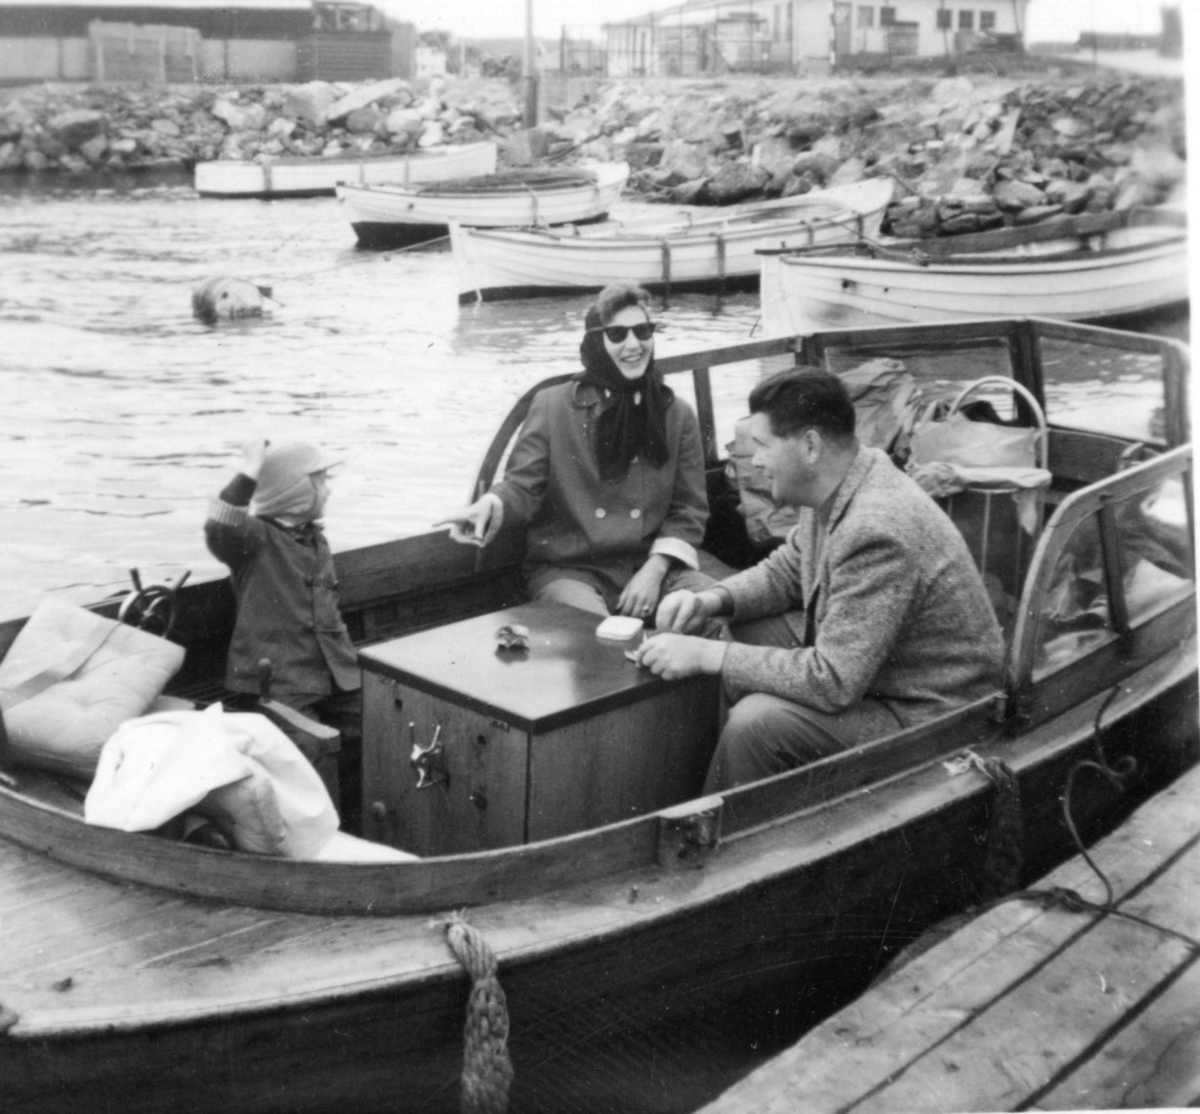 Kogg ved brygga i Kragerø. Blindtarmen. Familie planlegger tur. Linjegods (vinmonopolet) i bakgrunnen. 1950-tallet.